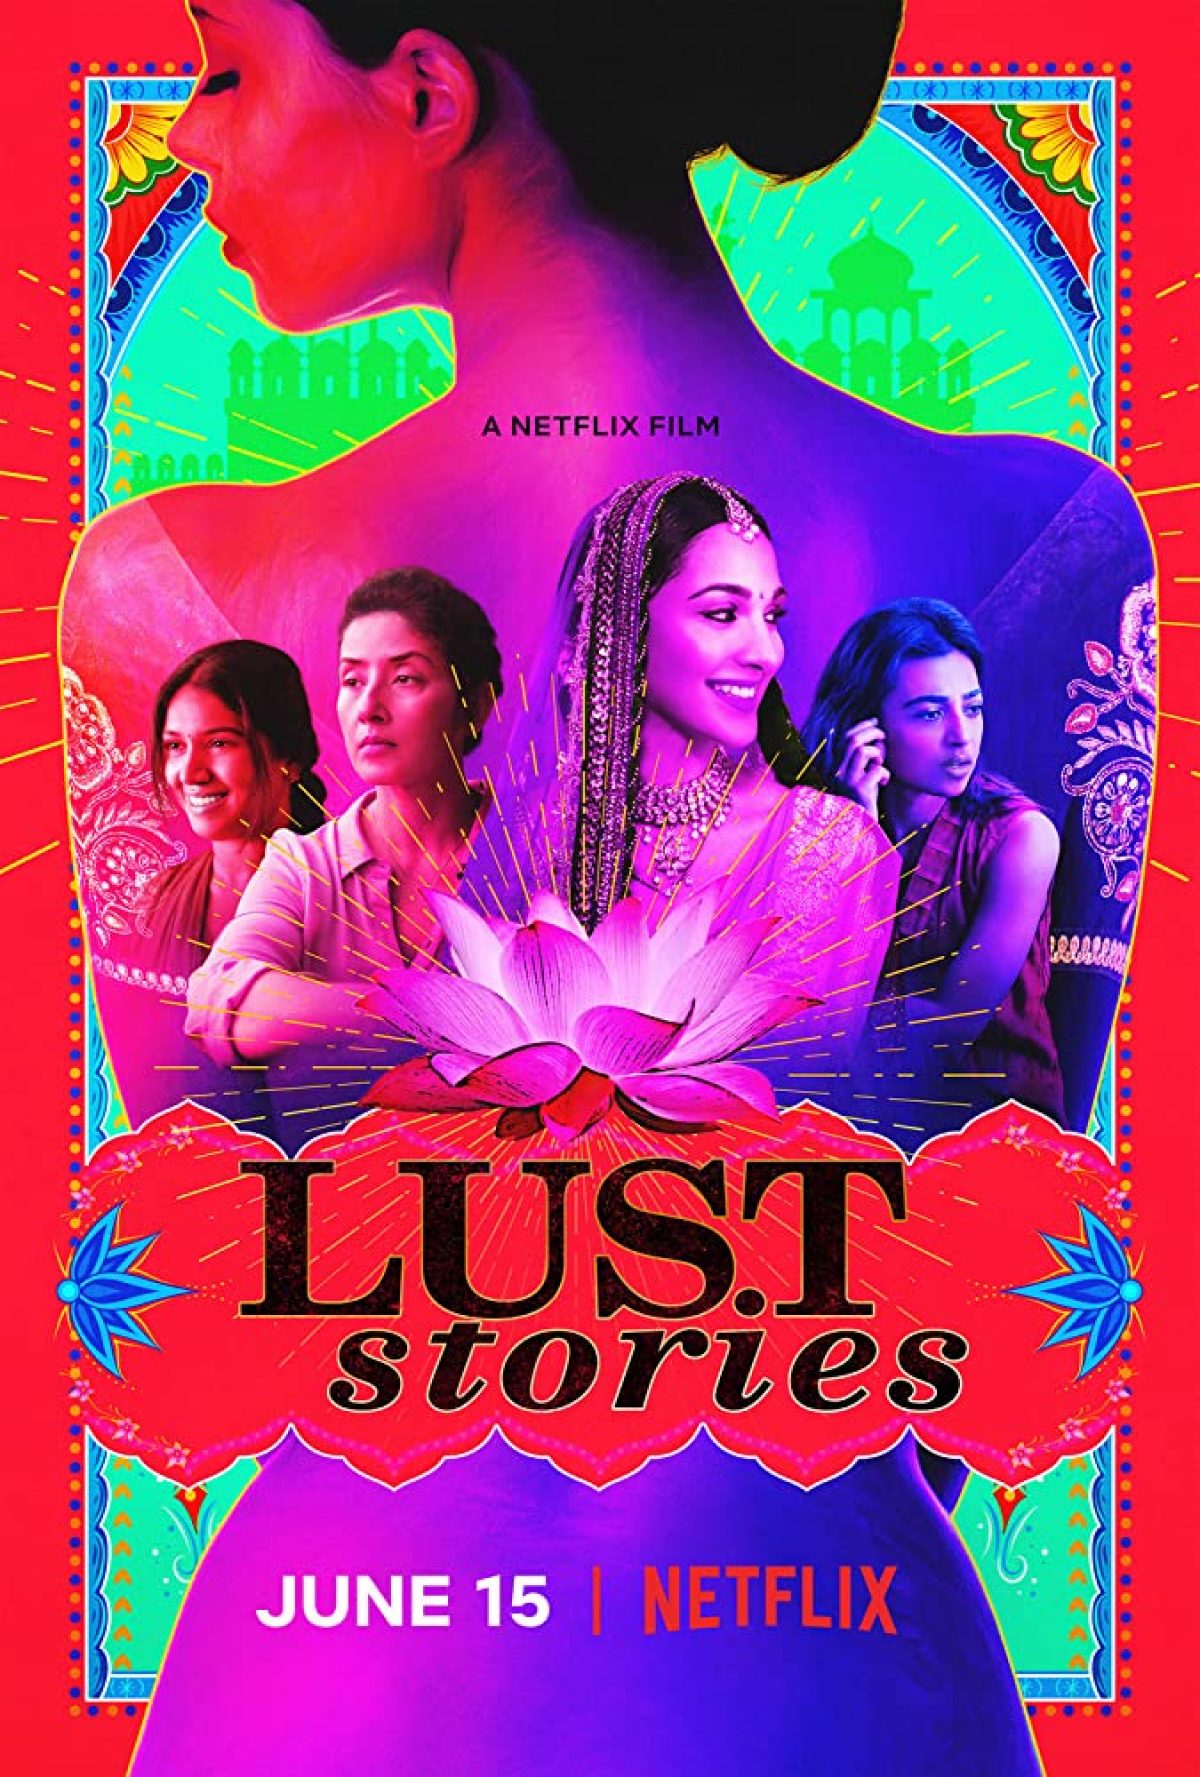 ดูหนังออนไลน์ฟรี Lust Stories – Netflix (2018) เรื่องรัก เรื่องใคร่